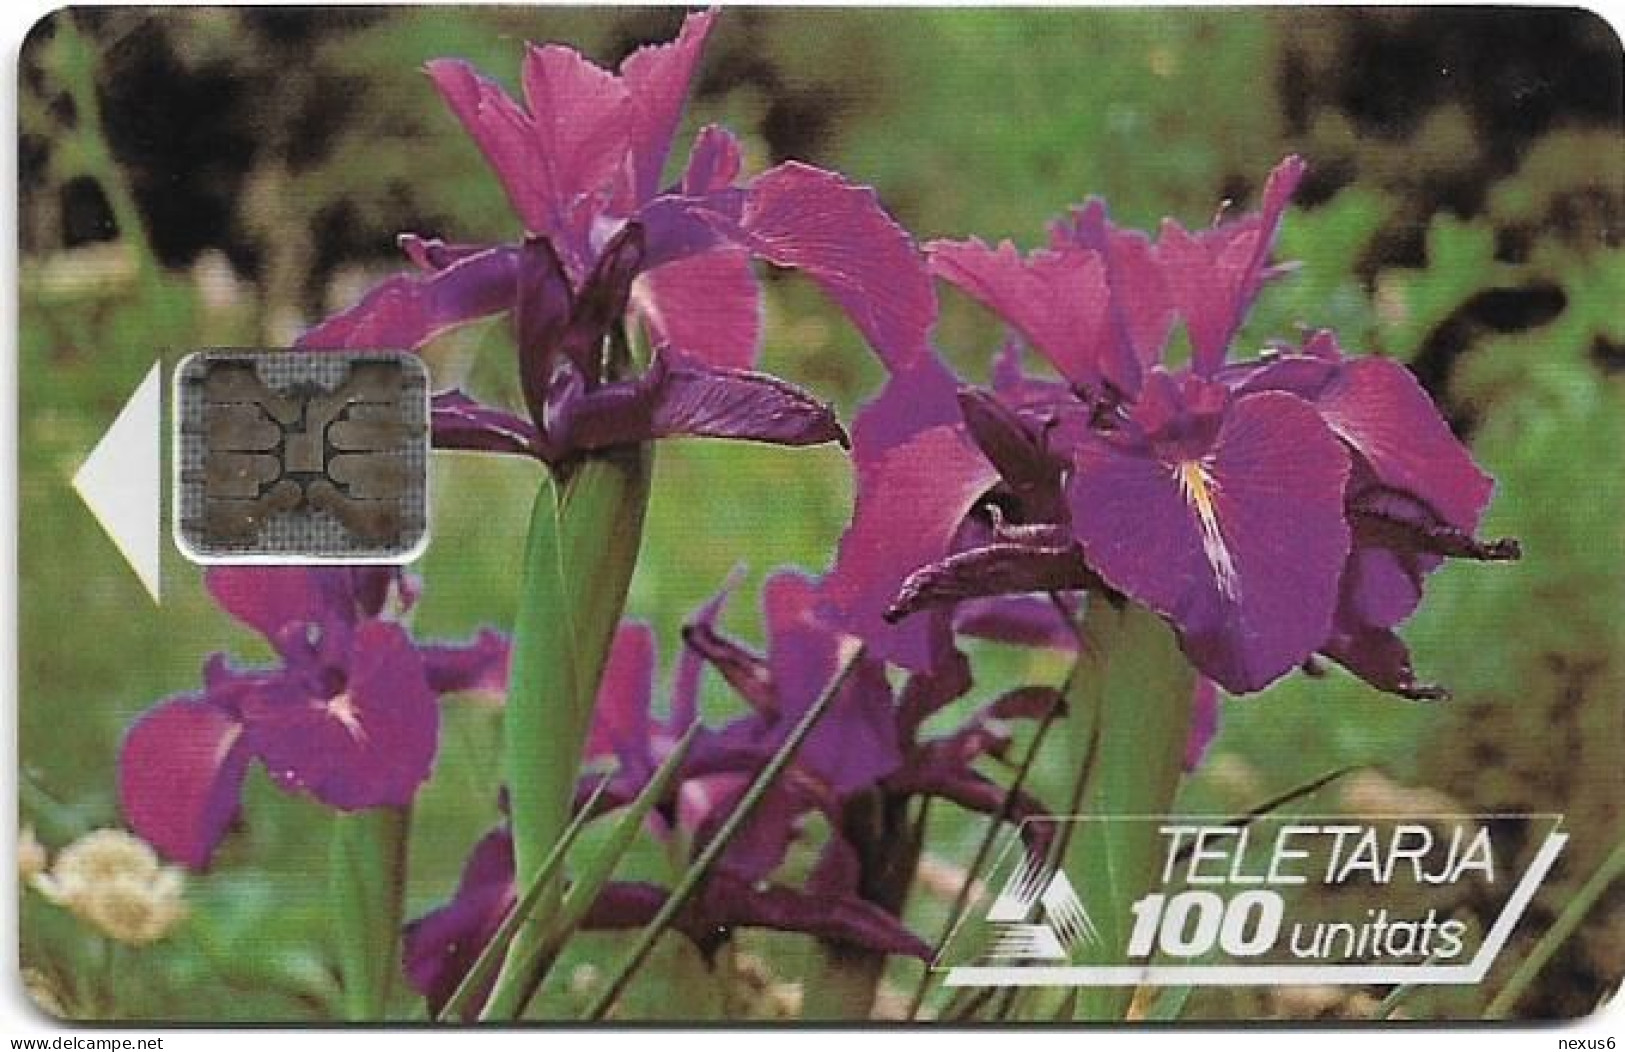 Andorra - STA - STA-0008 - Flowers, Pyrenean Iris, Cn.39531, 12.1992, SC5, 100U, 20.000ex, Used - Andorre